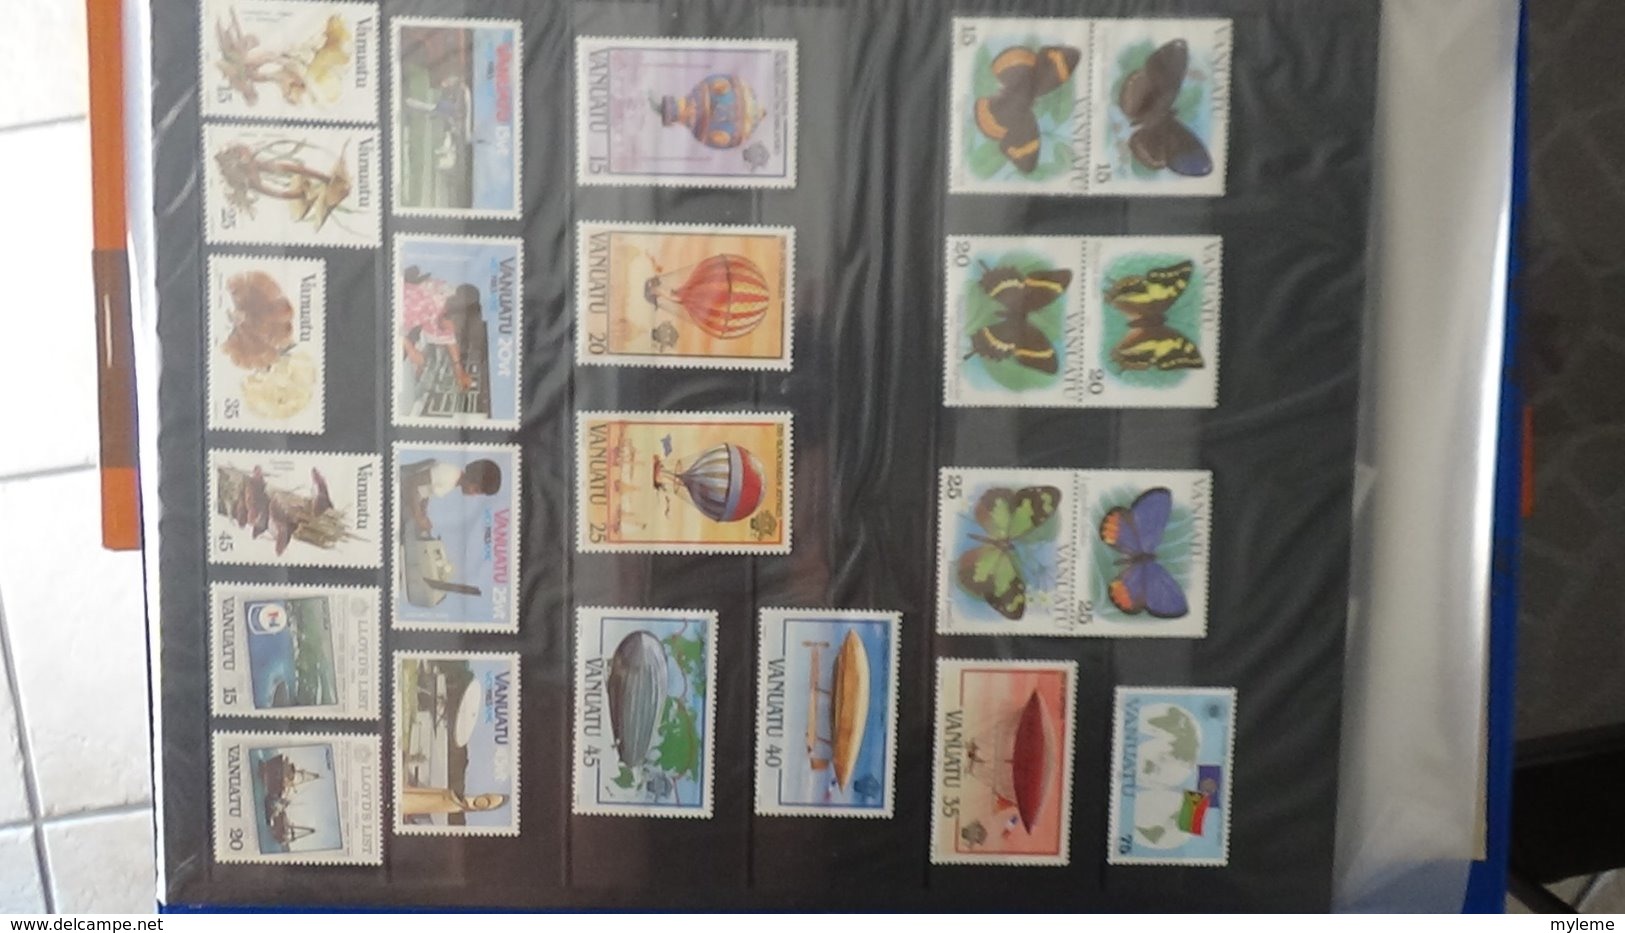 Classeur de timbres ** d'Algérie, Maroc, Tunise et Vanuatu à saisir !!!